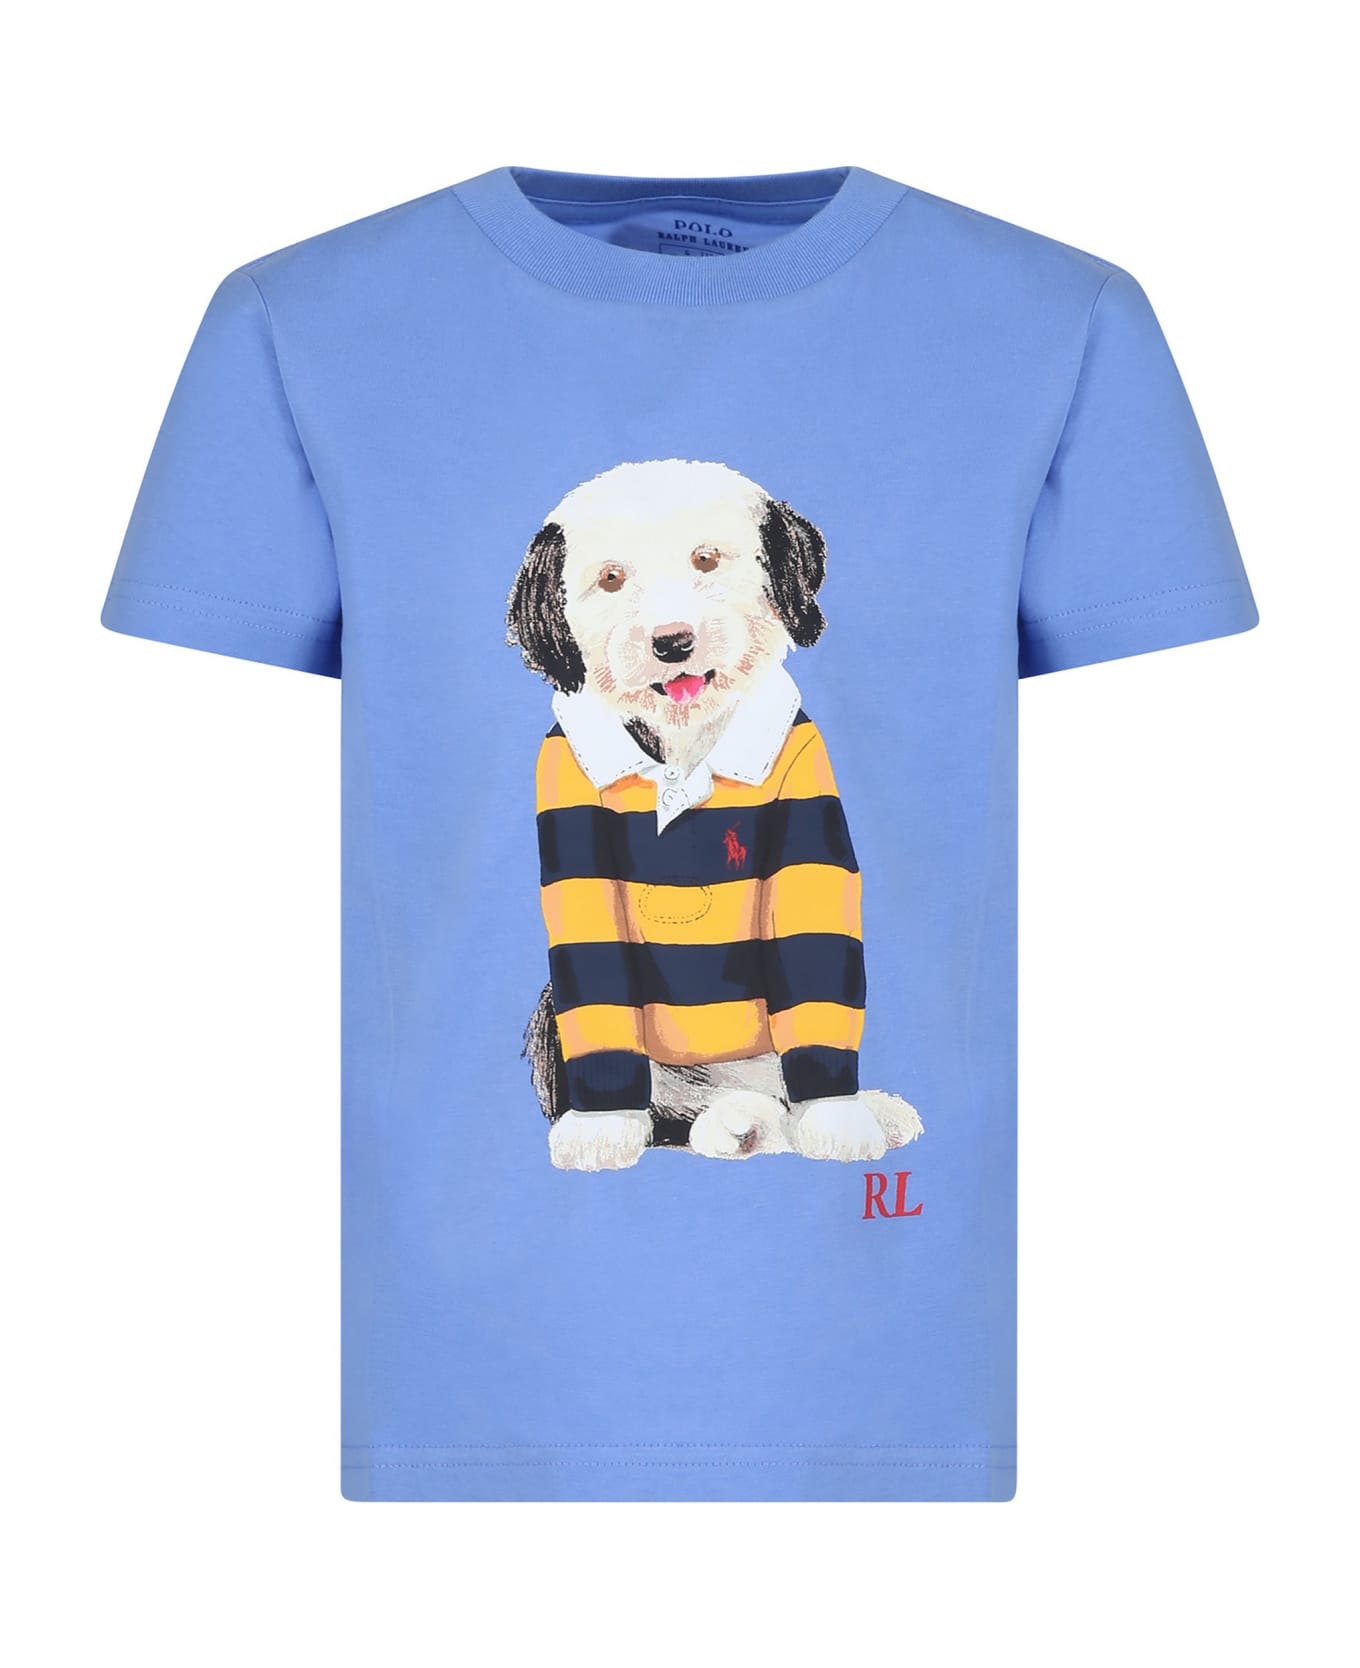 Ralph Lauren Light Blue T-shirt For Boy With Dog Print - Light Blue